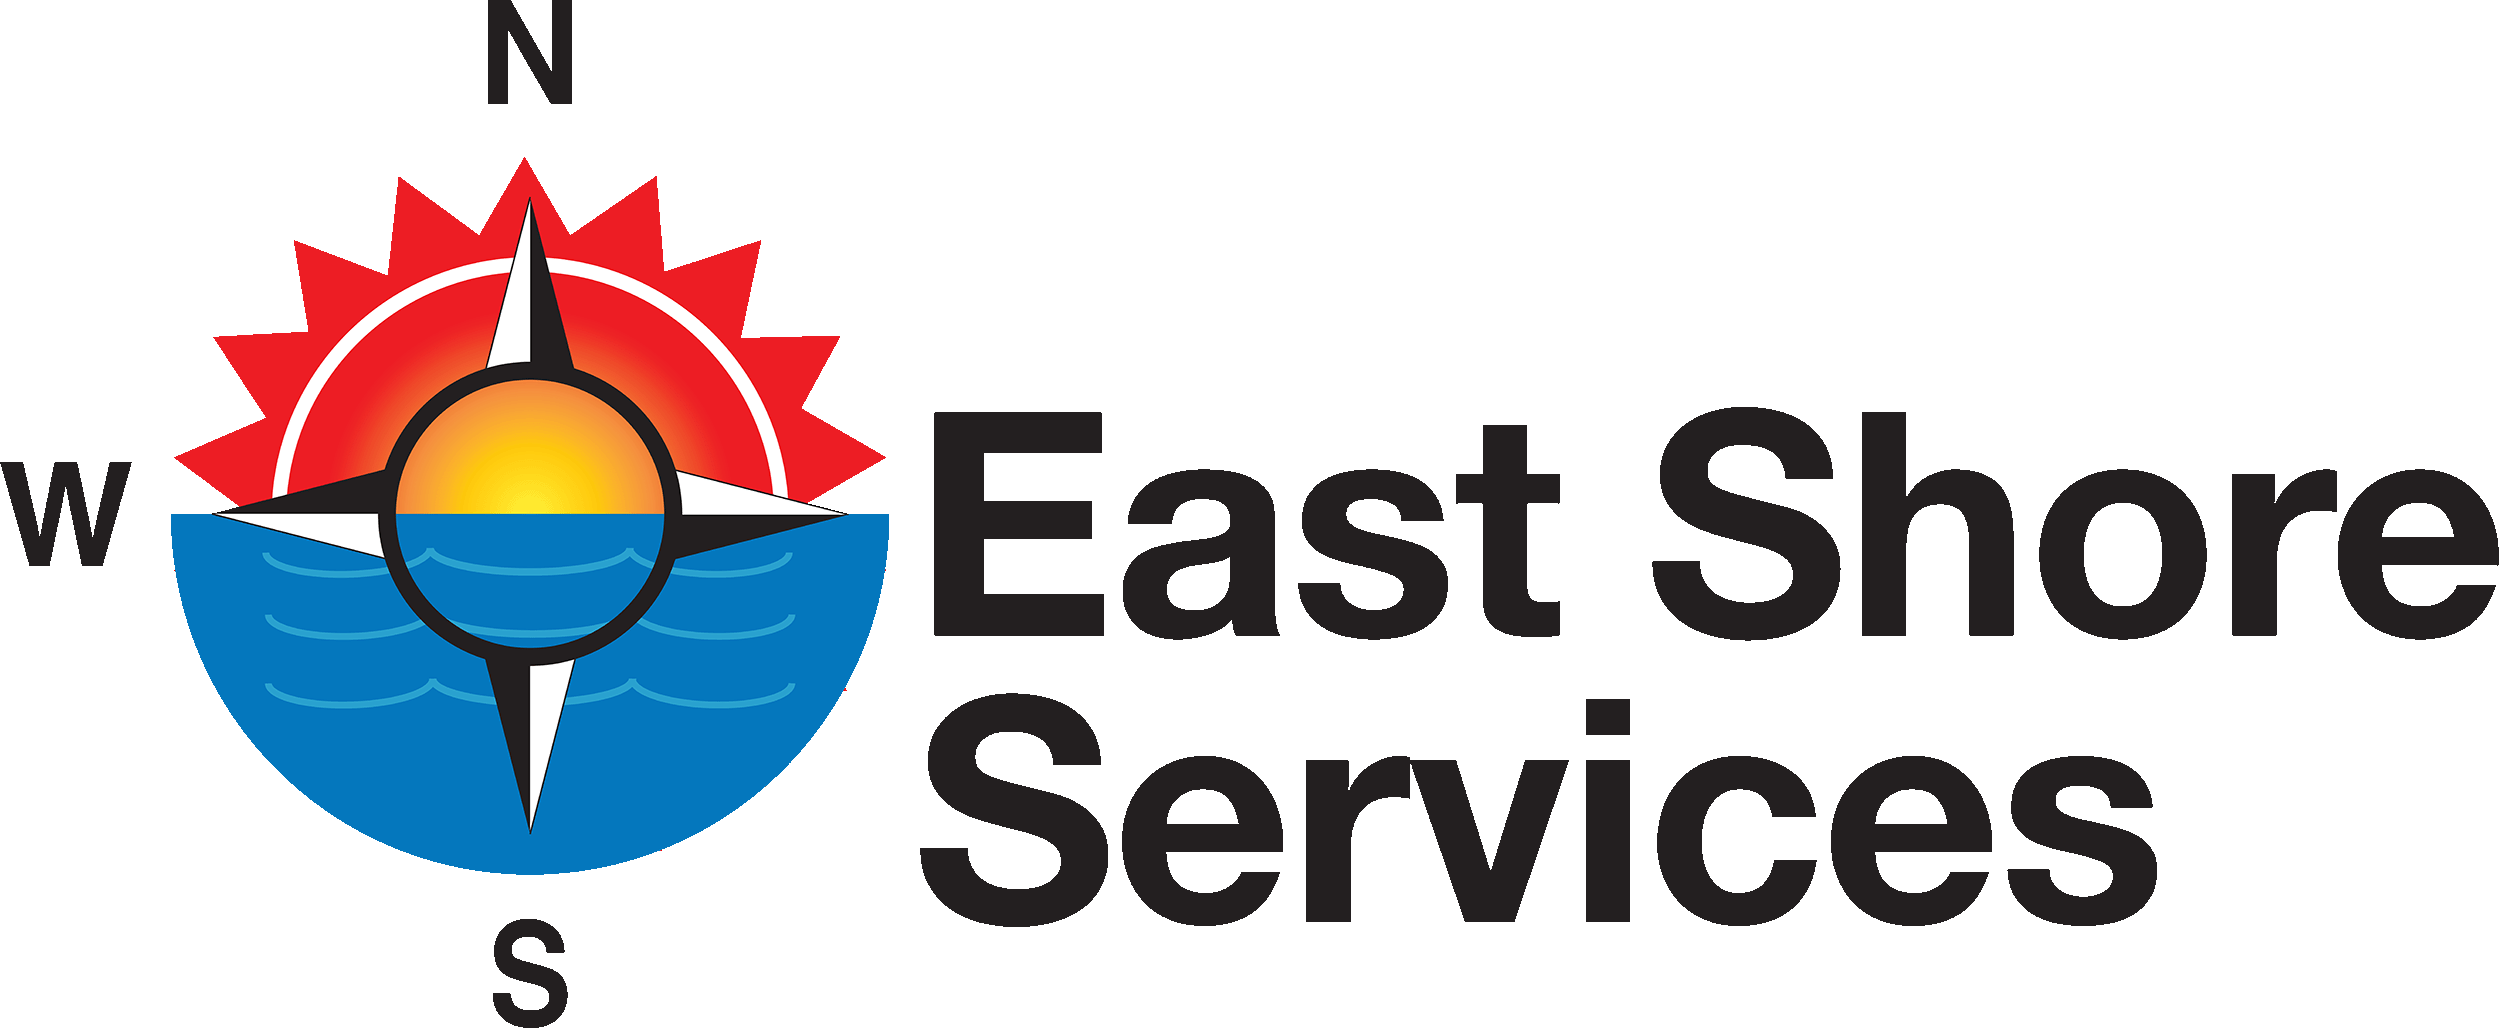 East Shore Services (Northwest Building Services)